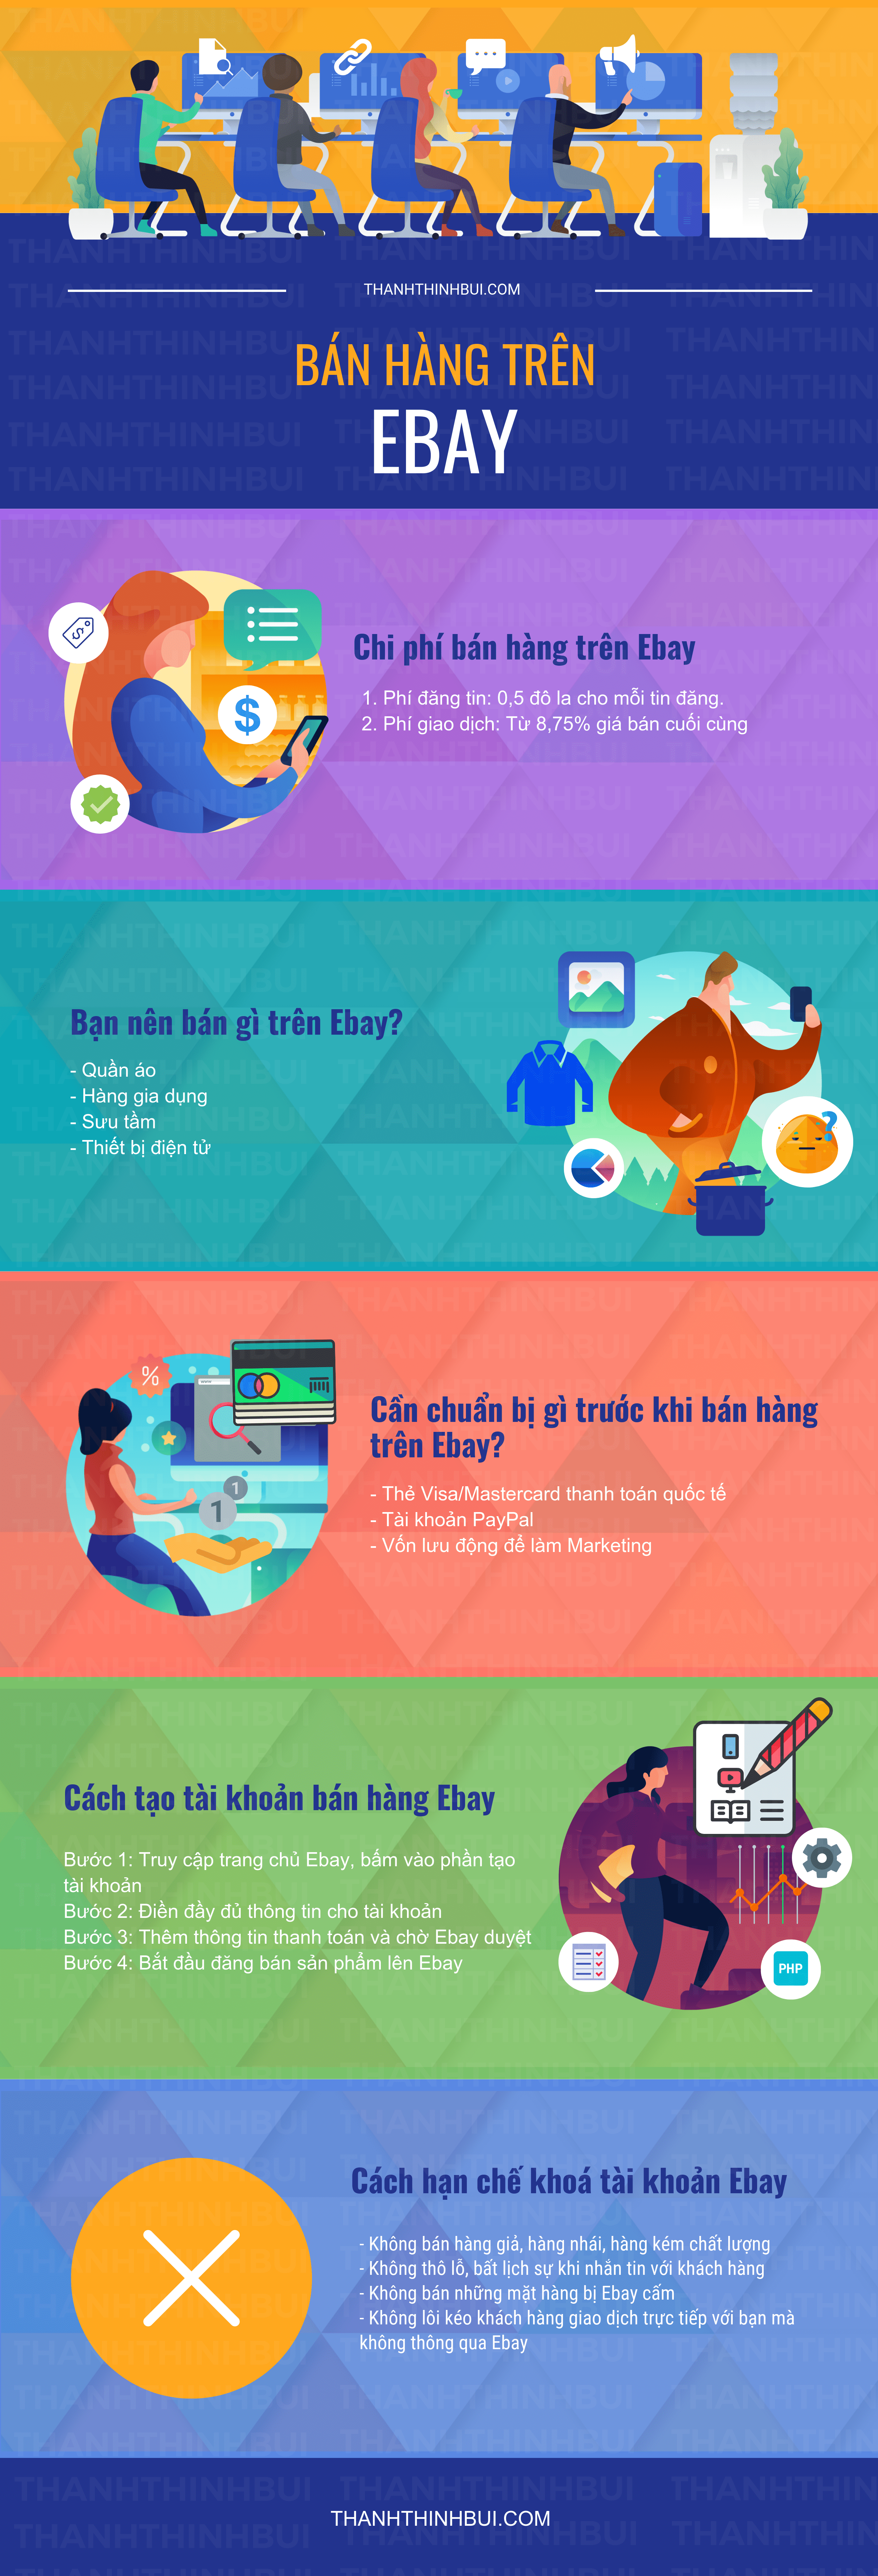 ban-hang-tren-ebay-infographic